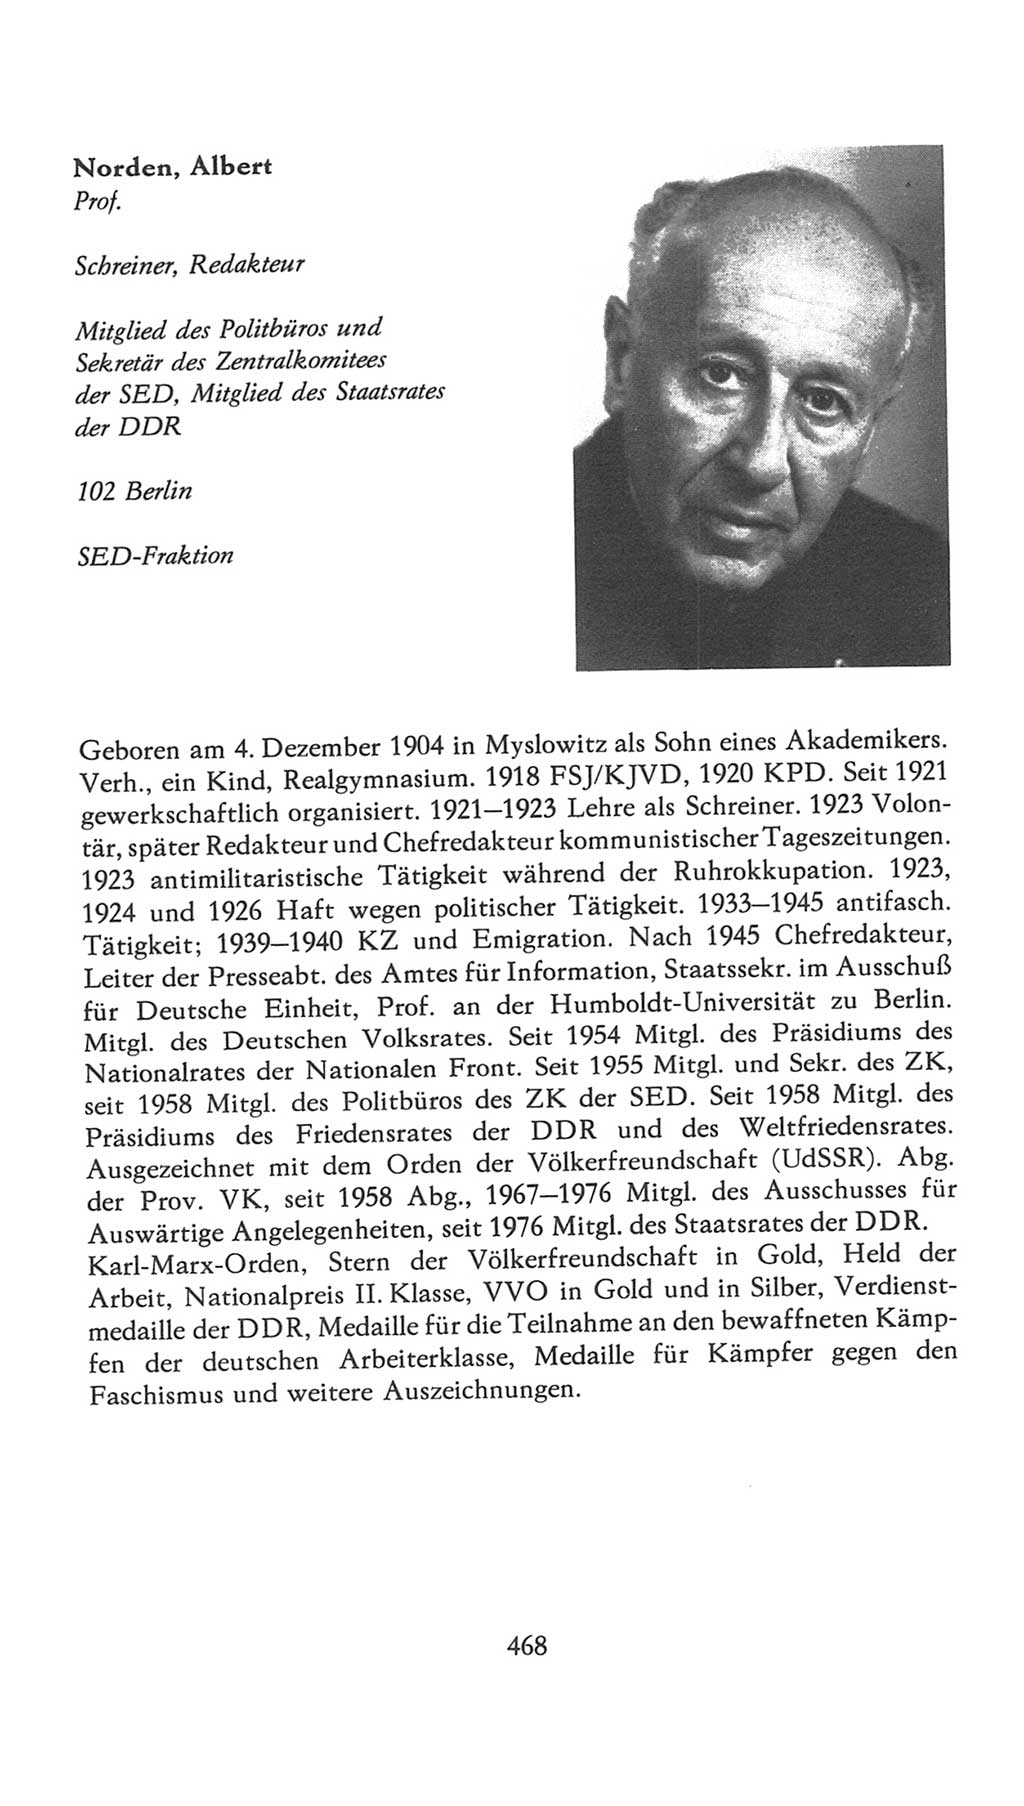 Volkskammer (VK) der Deutschen Demokratischen Republik (DDR), 7. Wahlperiode 1976-1981, Seite 468 (VK. DDR 7. WP. 1976-1981, S. 468)